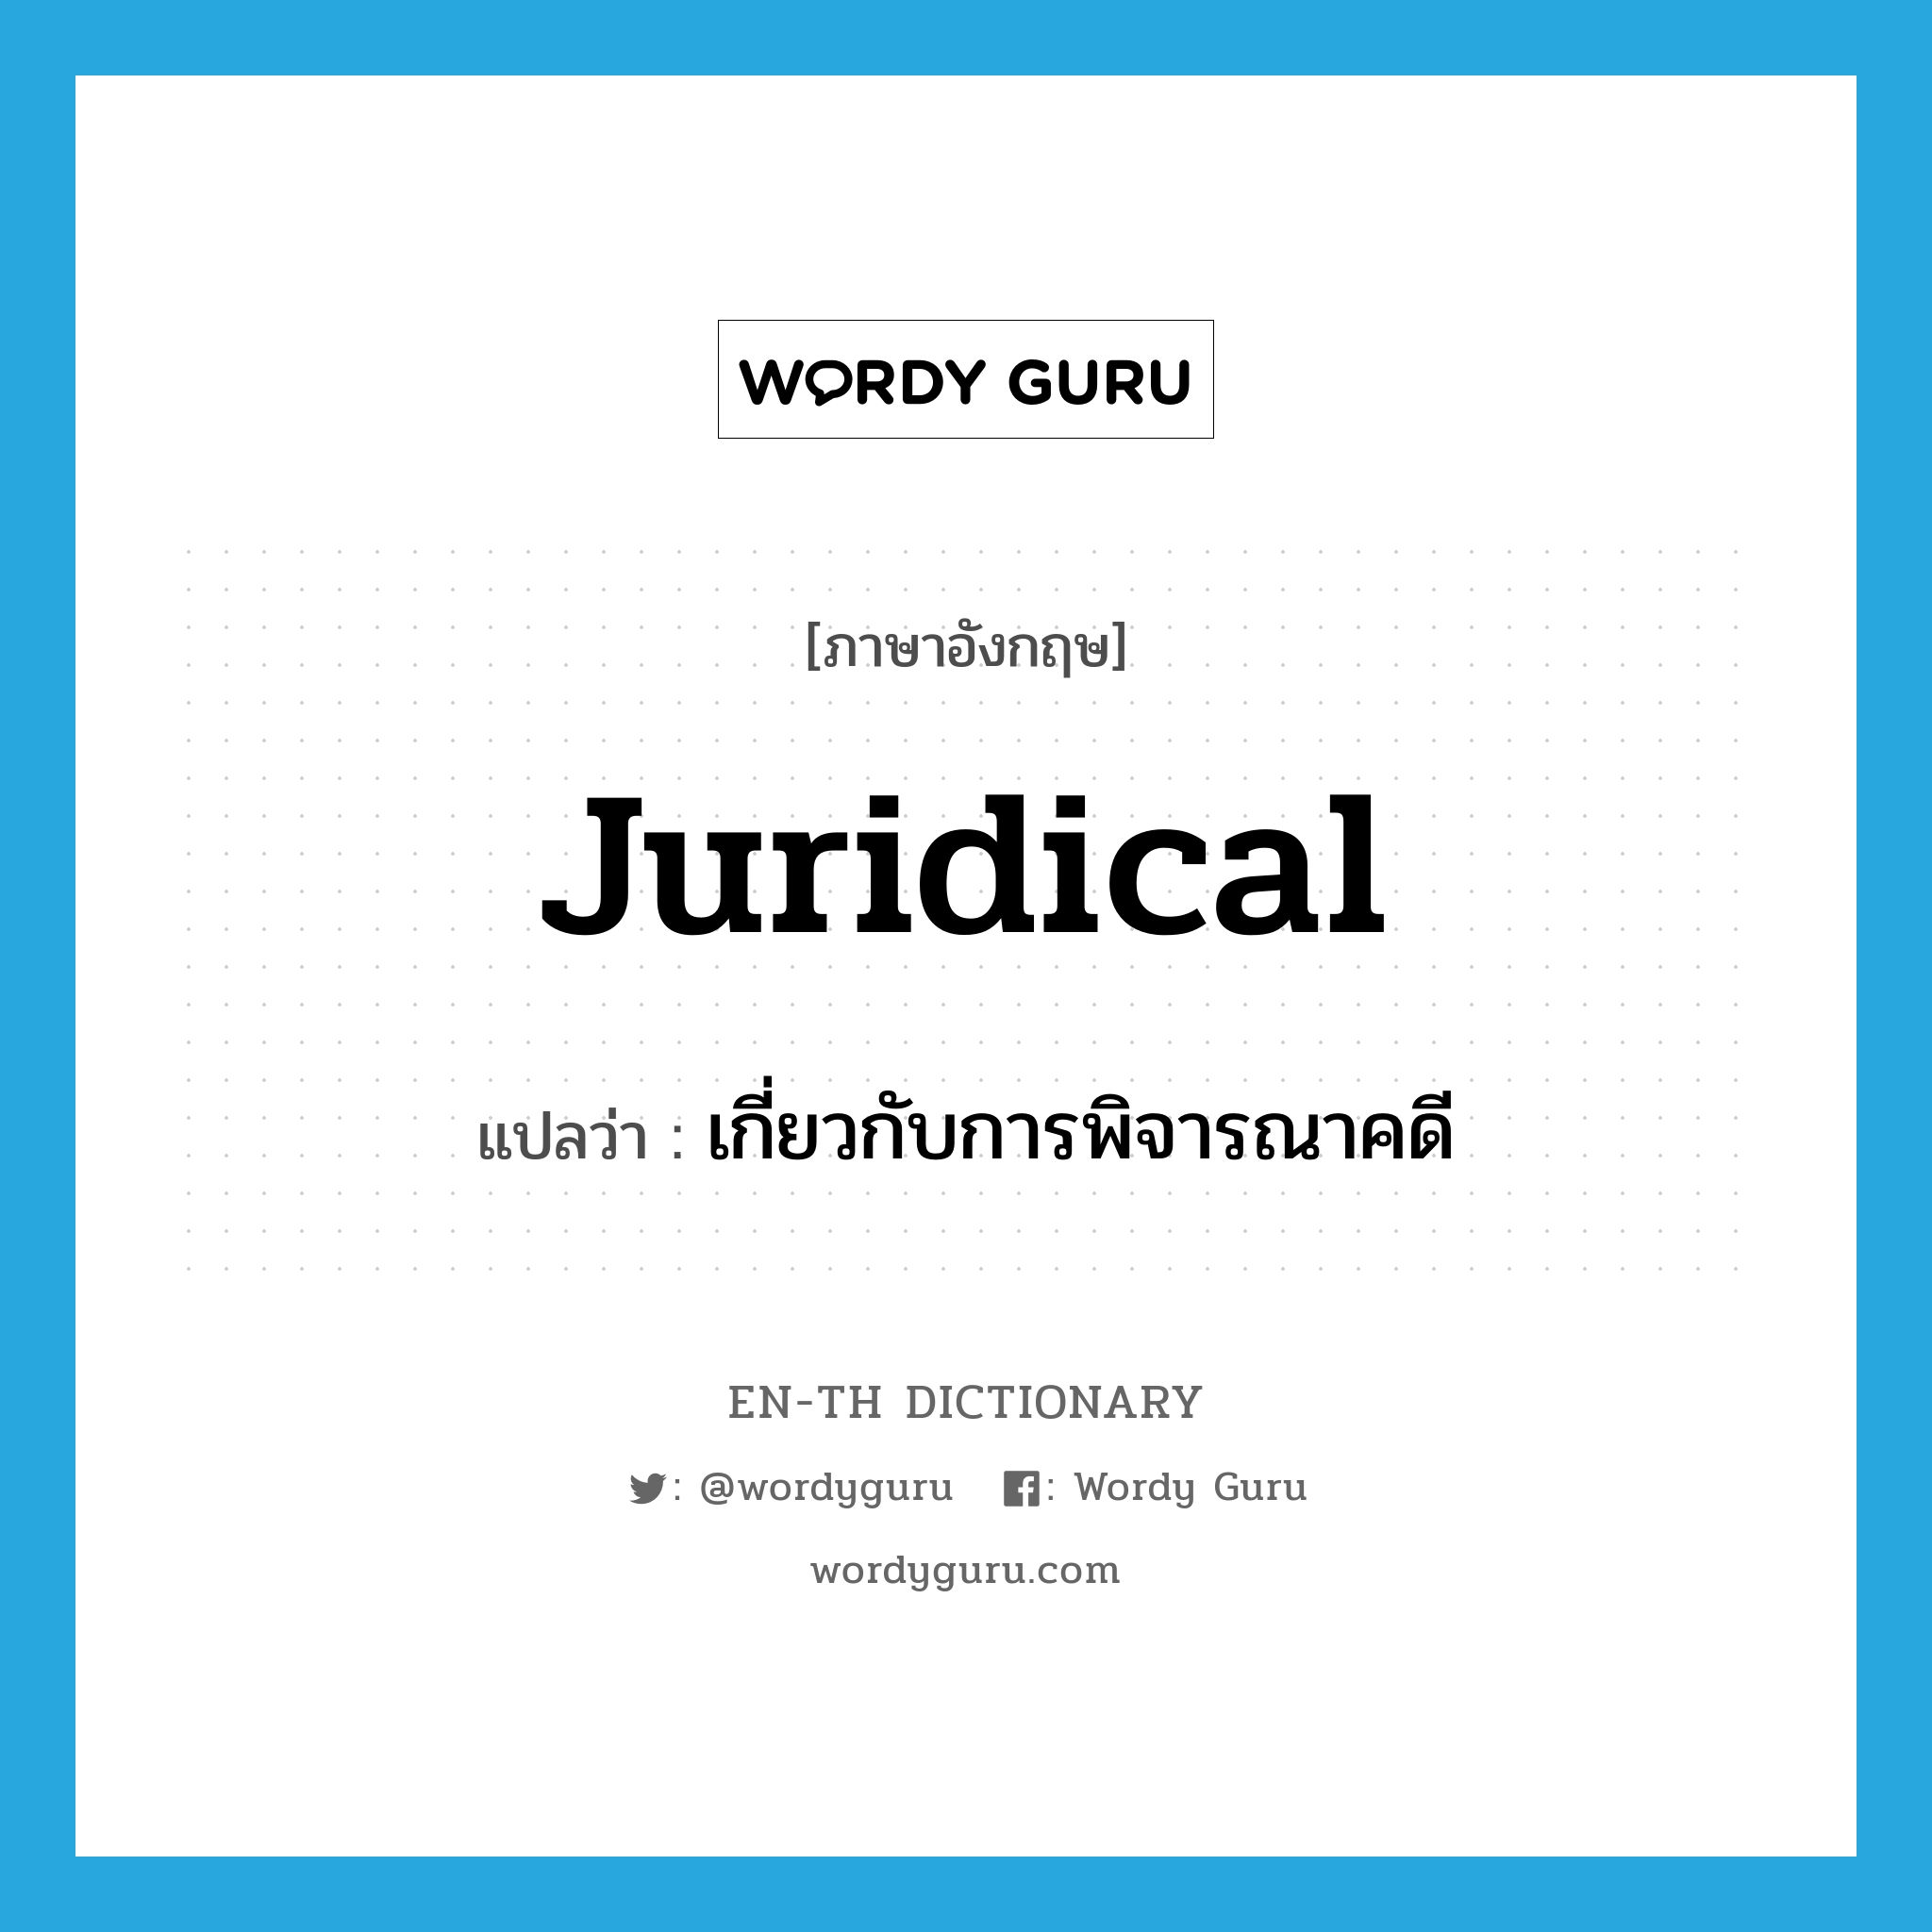 เกี่ยวกับการพิจารณาคดี ภาษาอังกฤษ?, คำศัพท์ภาษาอังกฤษ เกี่ยวกับการพิจารณาคดี แปลว่า juridical ประเภท ADJ หมวด ADJ